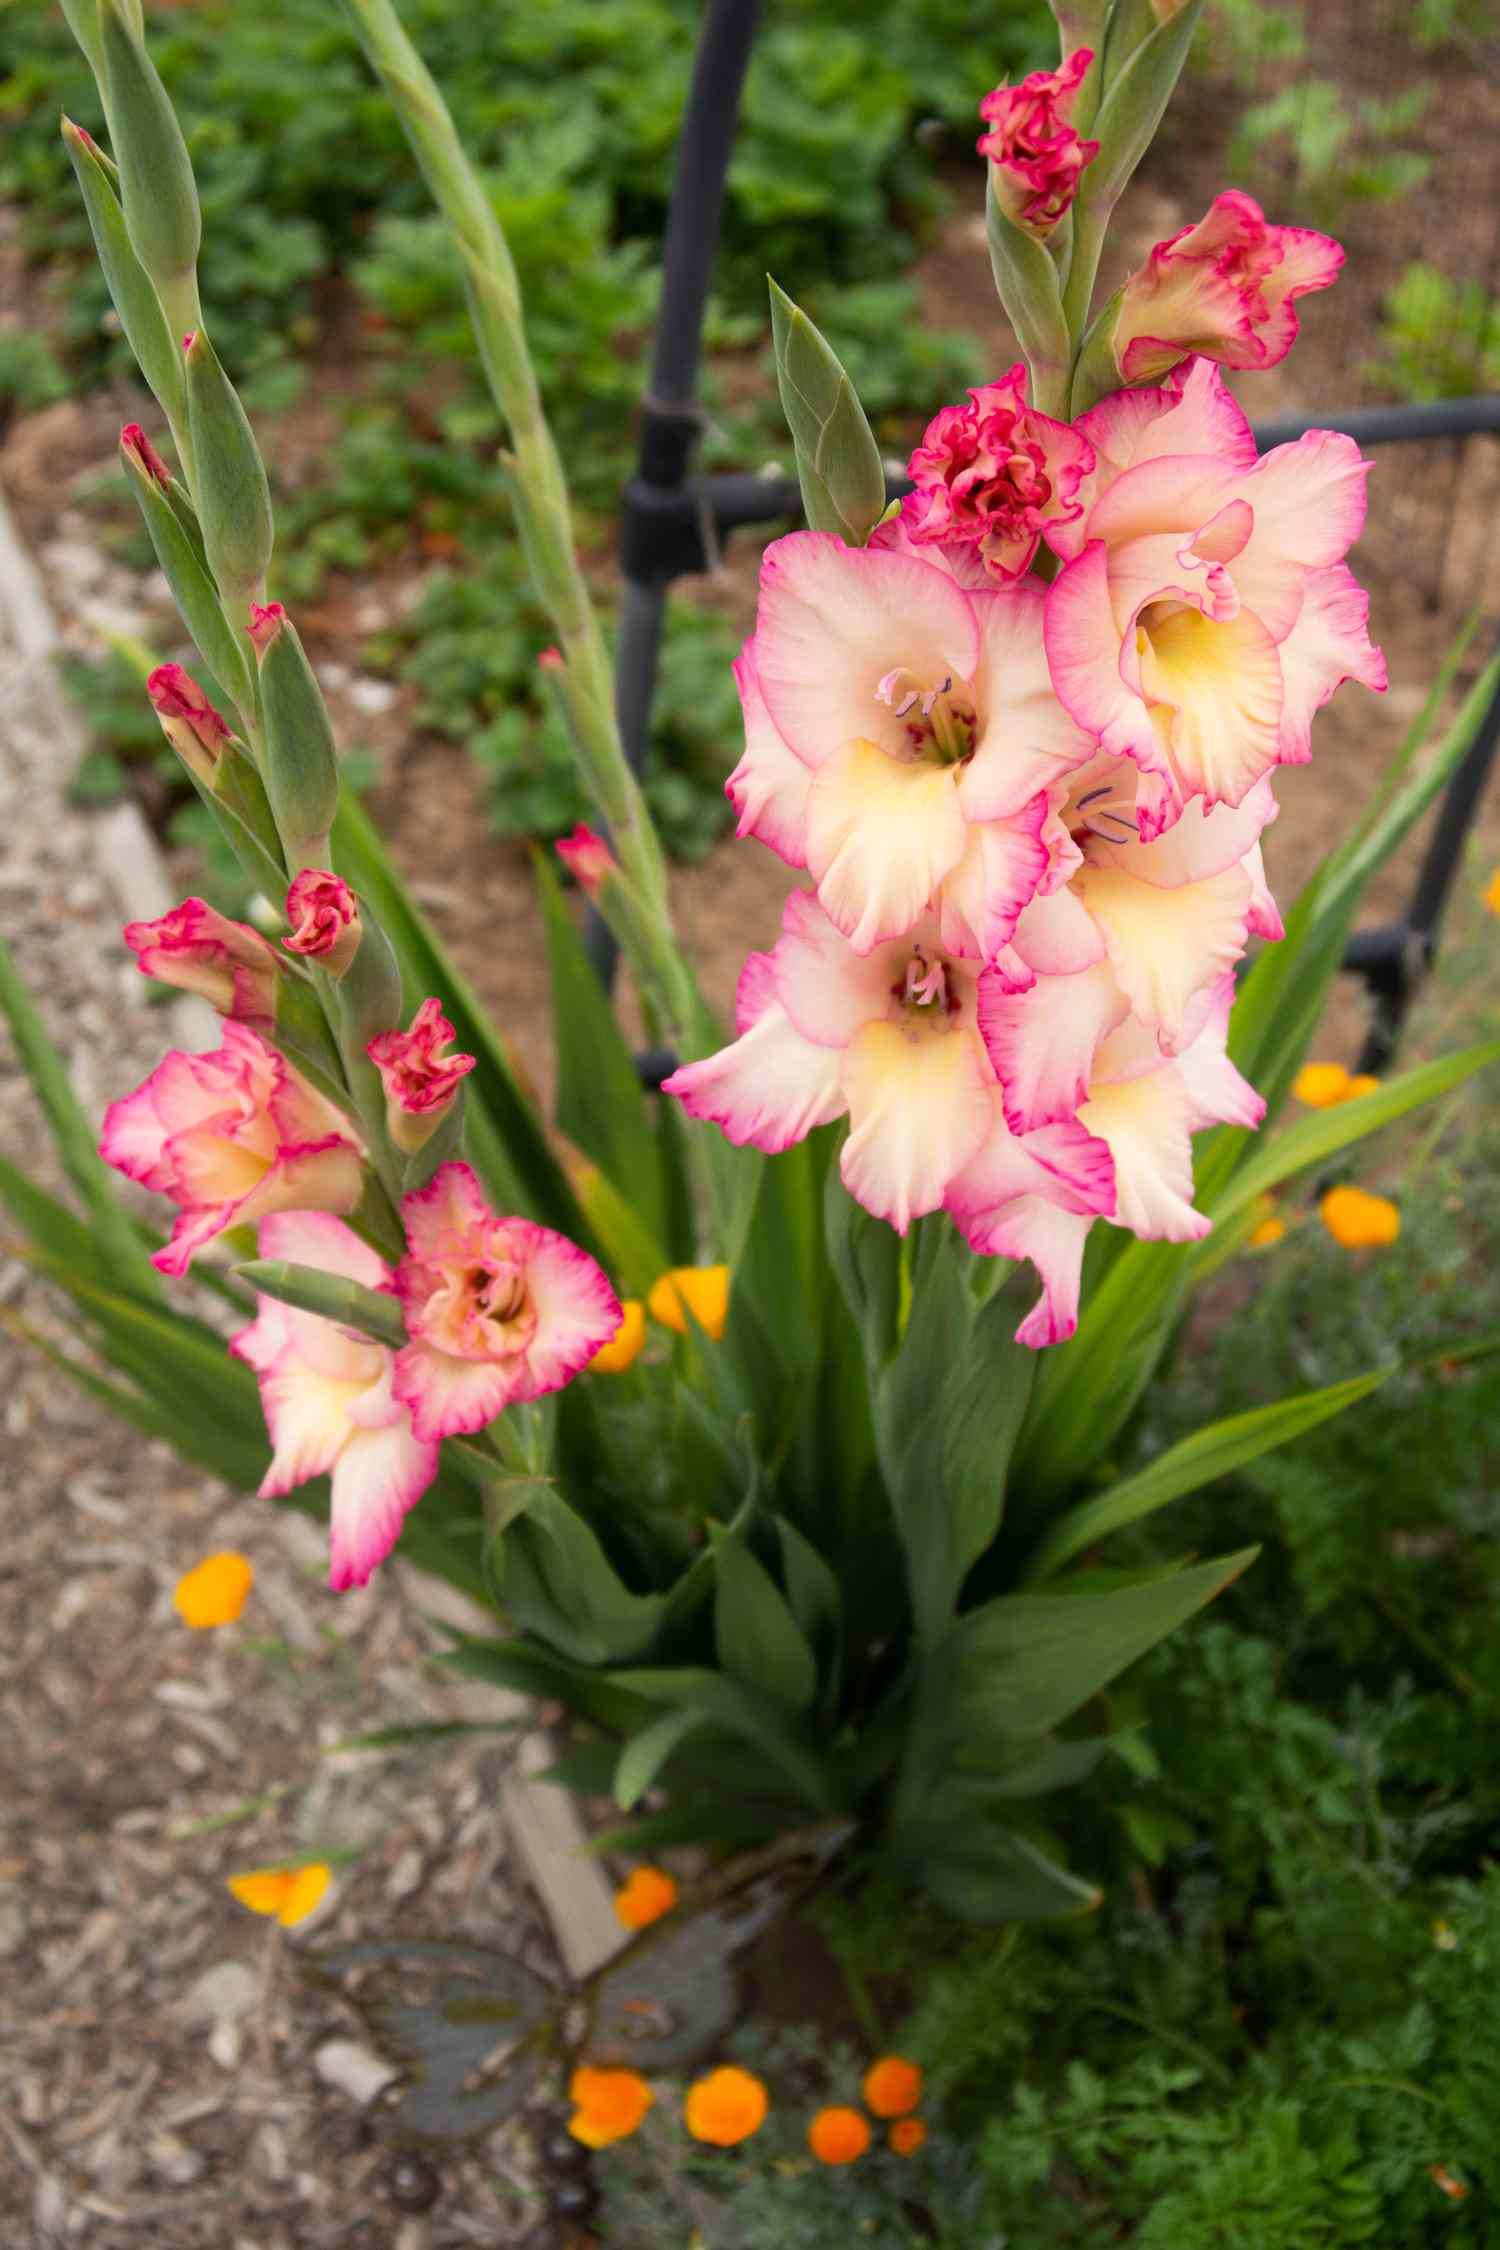 Gladiolenpflanze mit hohen Blütenstängeln mit creme- und rosafarbenen Blüten und Knospen